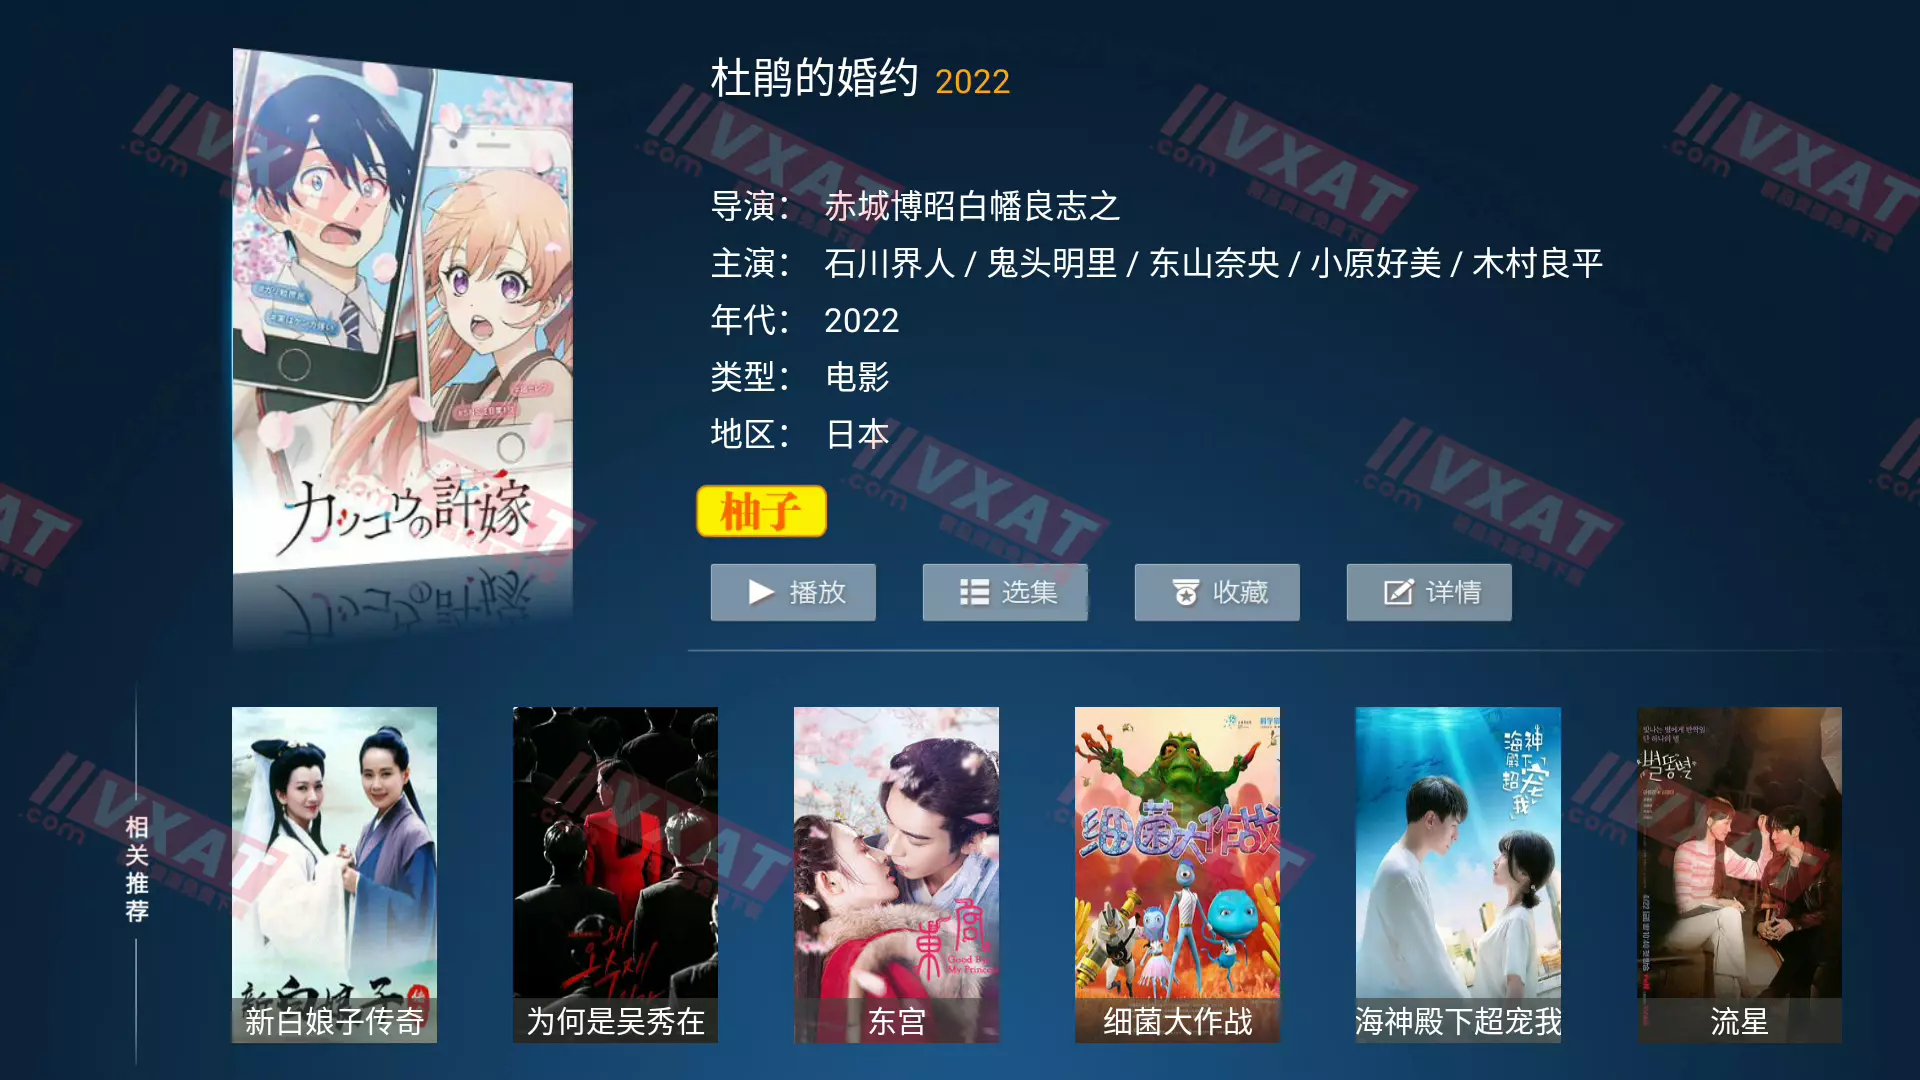 柚子TV_v5.0.0 电视版 免登录 VIP特别版插图